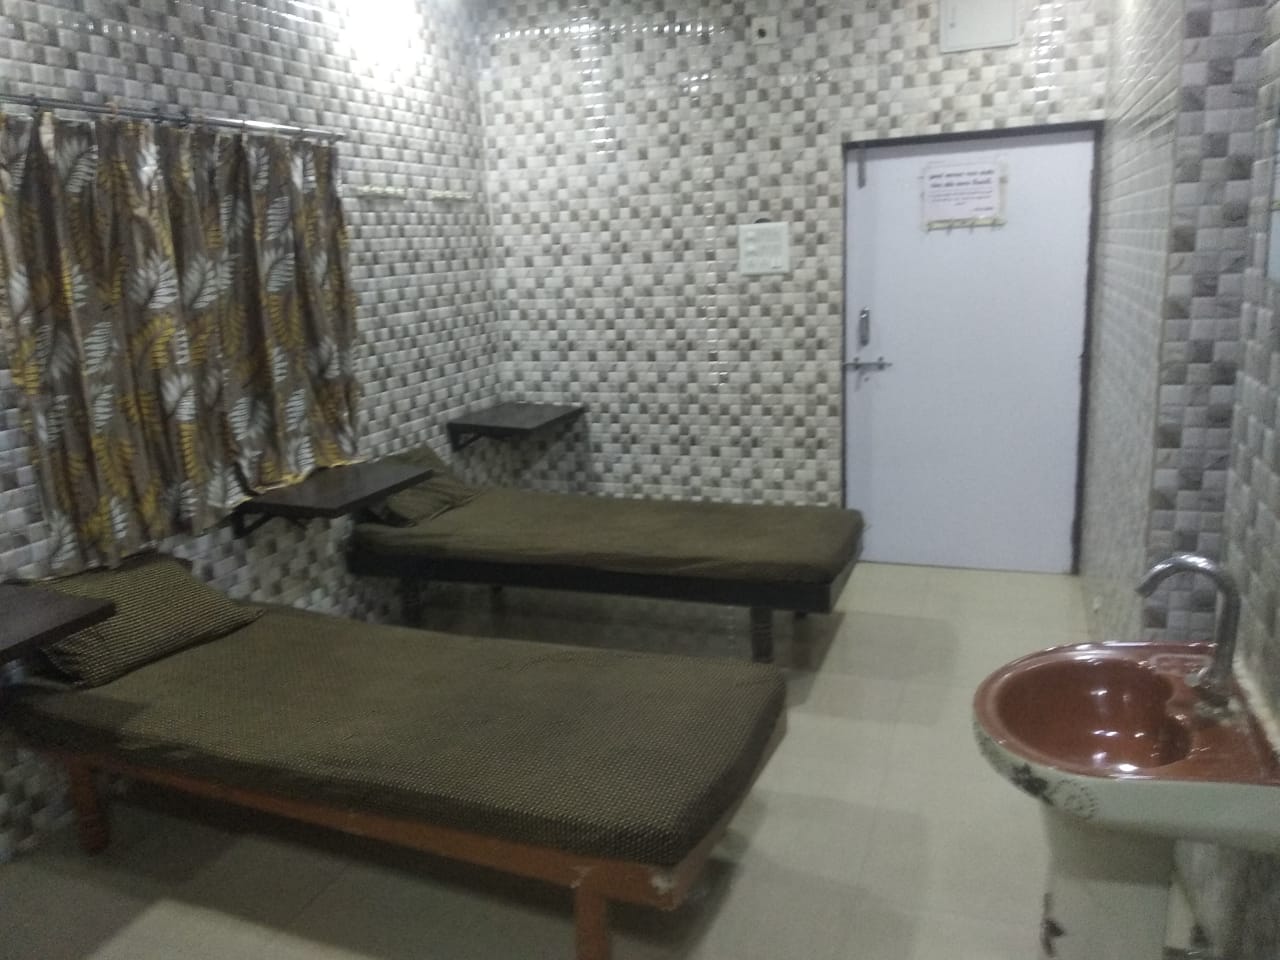 Hostel for Boys in Rajkot